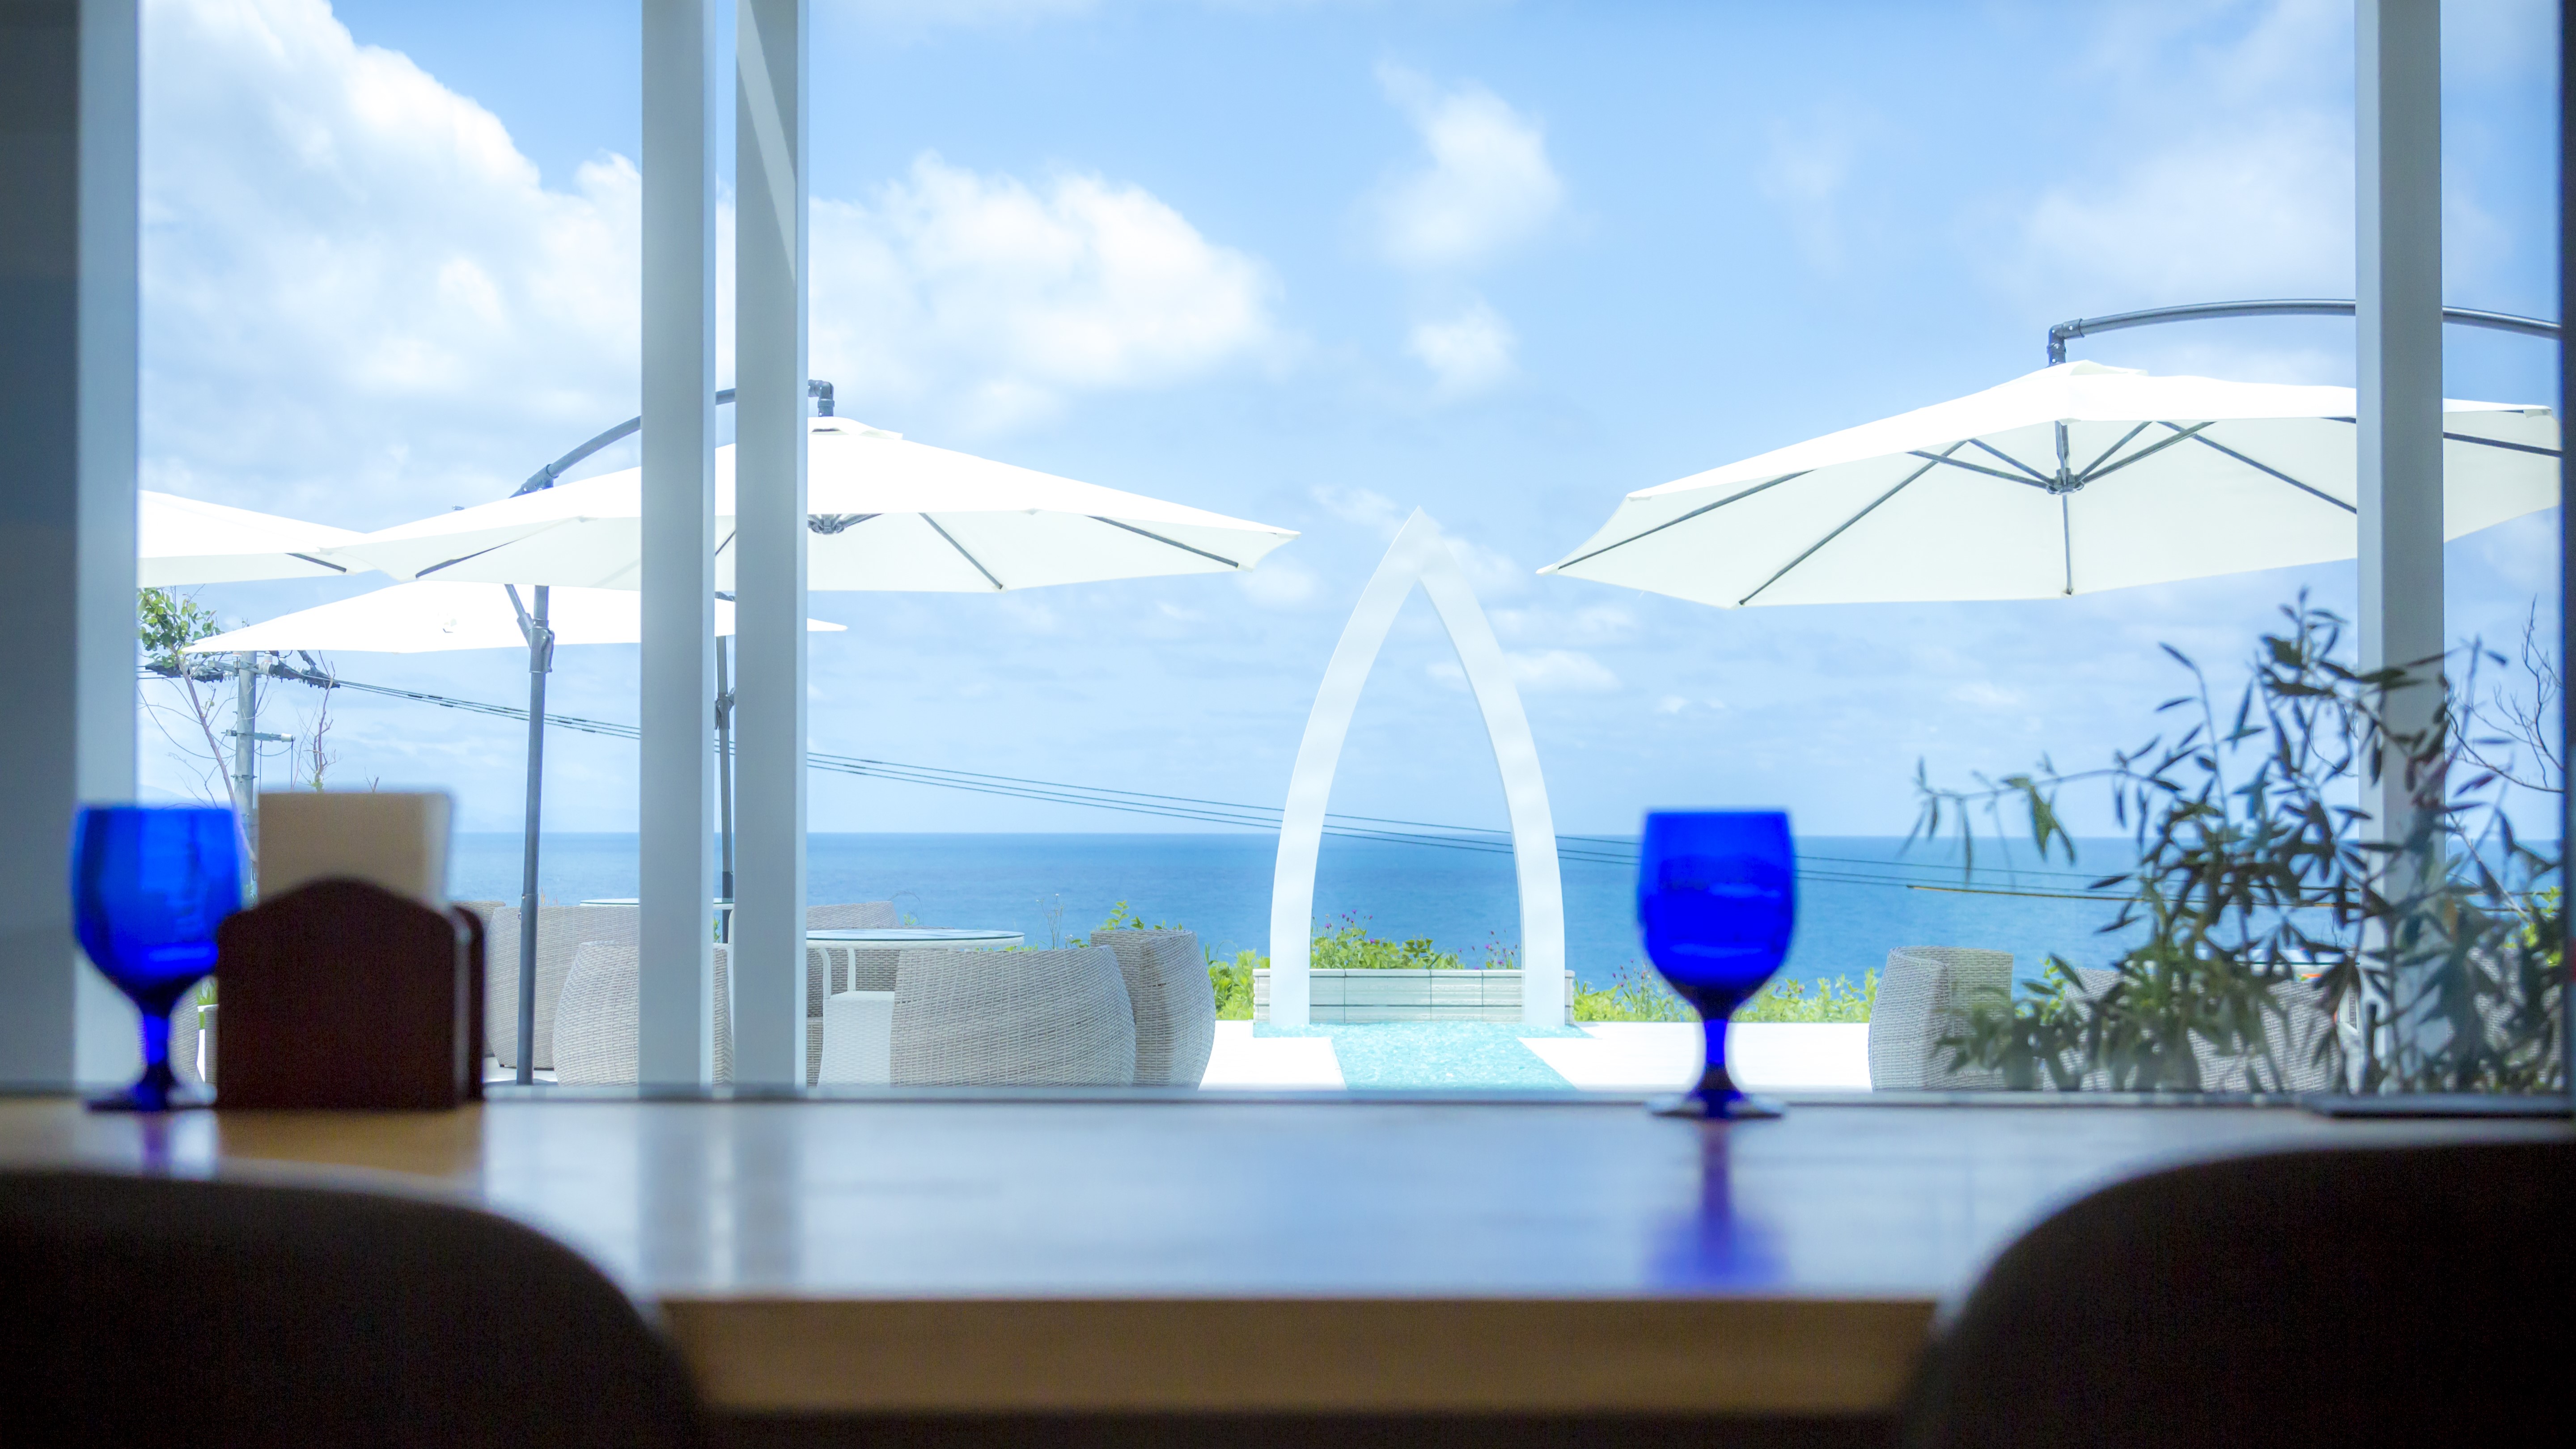 【間人テラス「My sunshine」】絶景を望むカフェで海を見ながらごゆるりと。